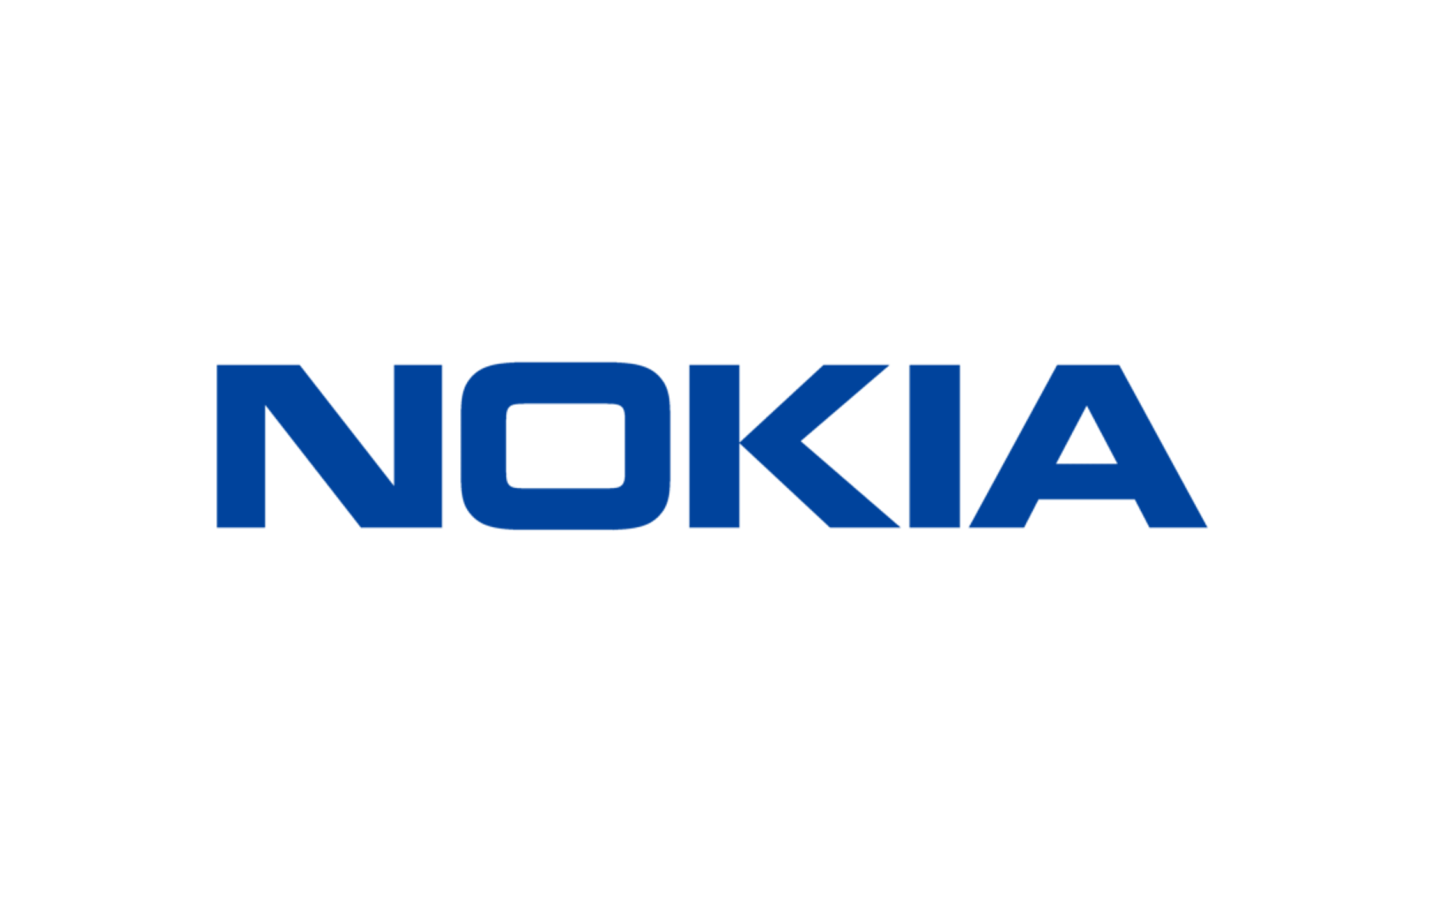 Nokia 未來有可能不再推出智慧型手機了？外媒從兩點看出一些端倪